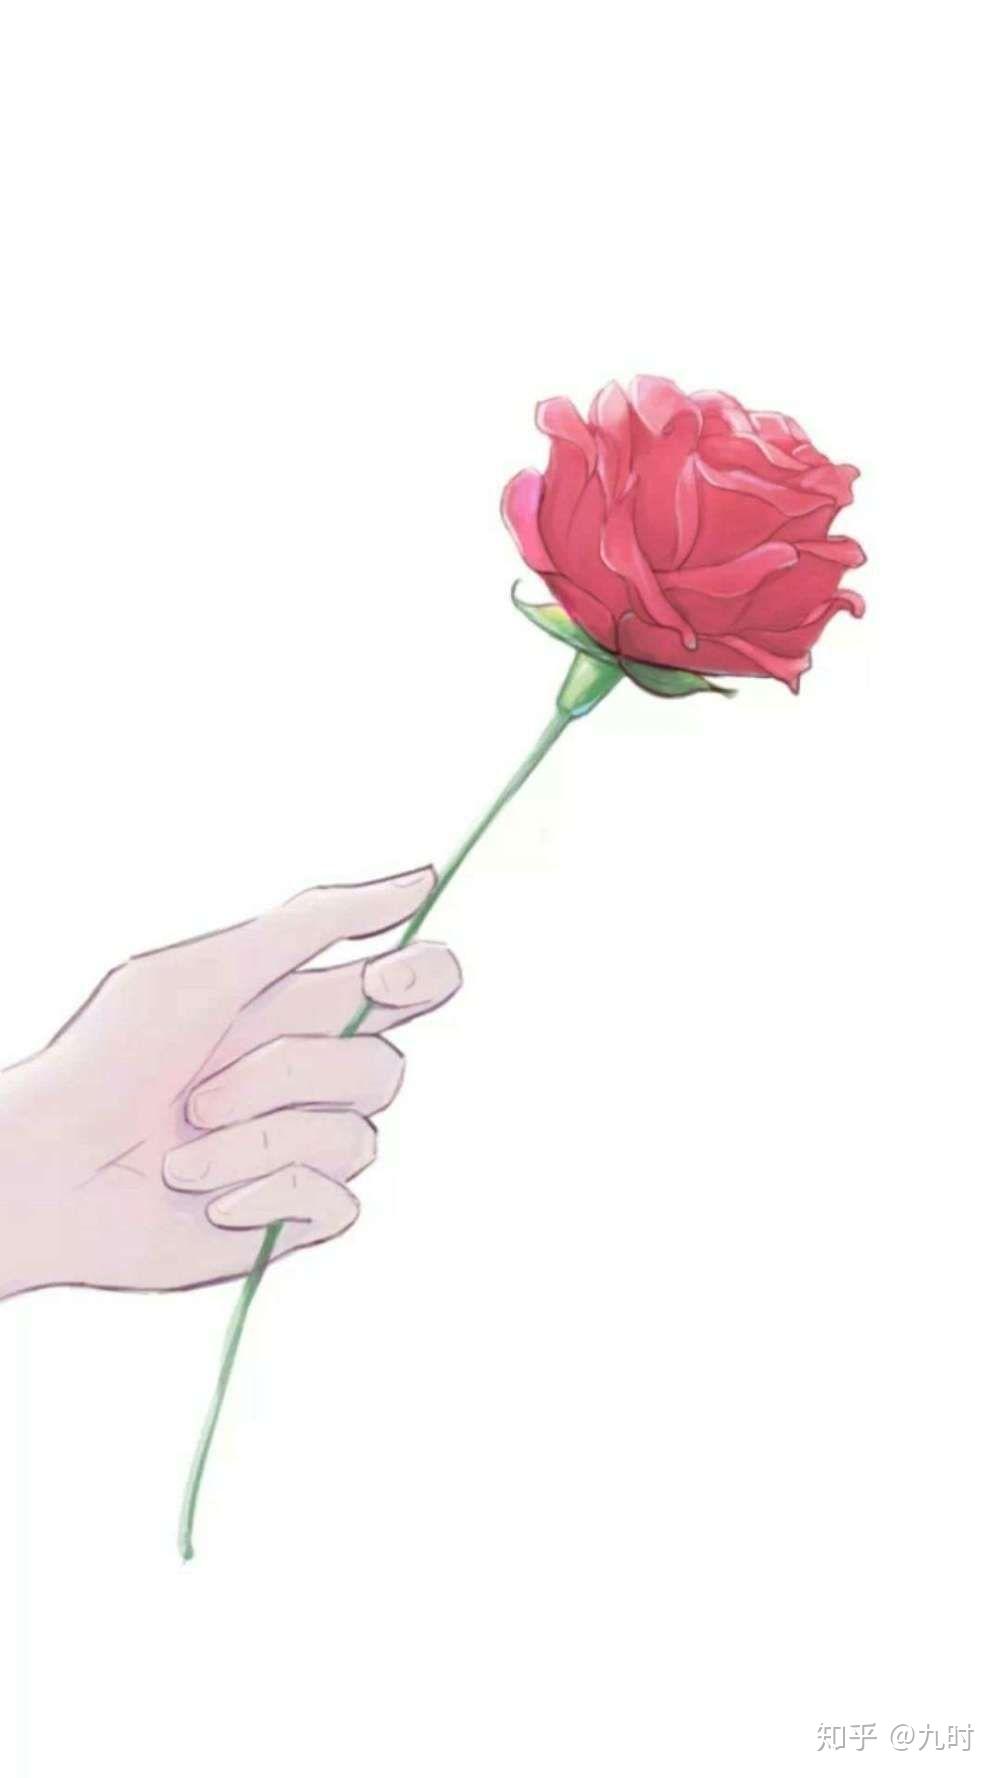 求一组动漫情头,是一只手递信和红白玫瑰花的,只是方向相反?